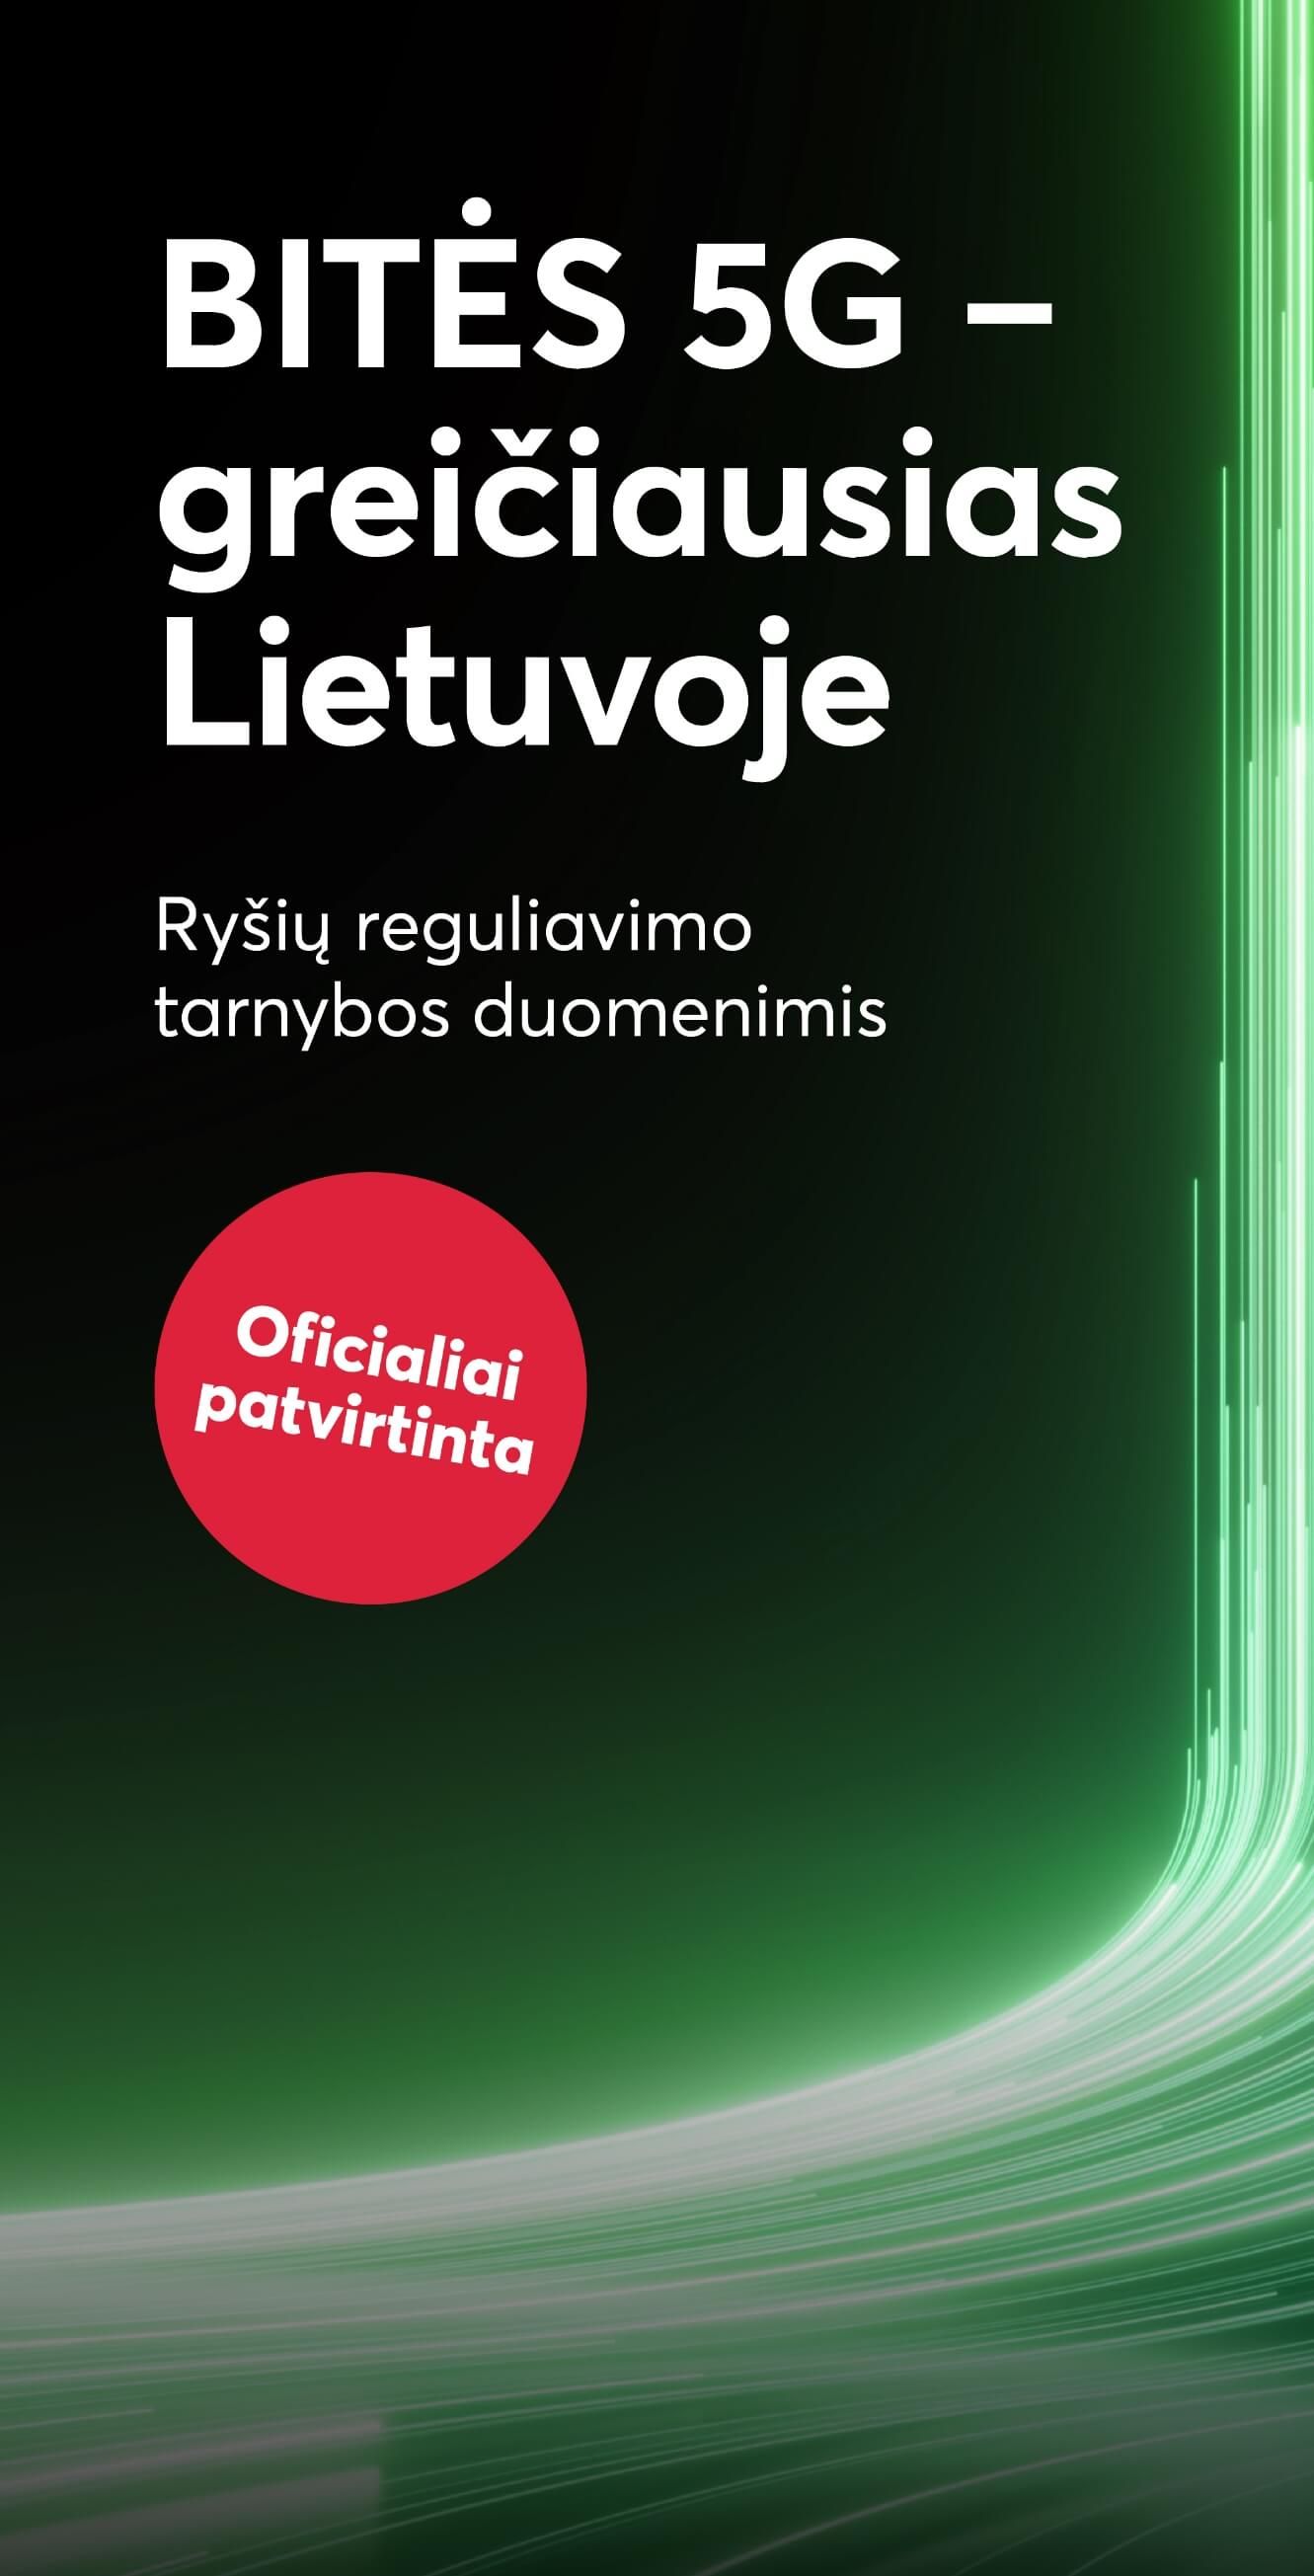 BITĖS 5G - greičiausias Lietuvoje